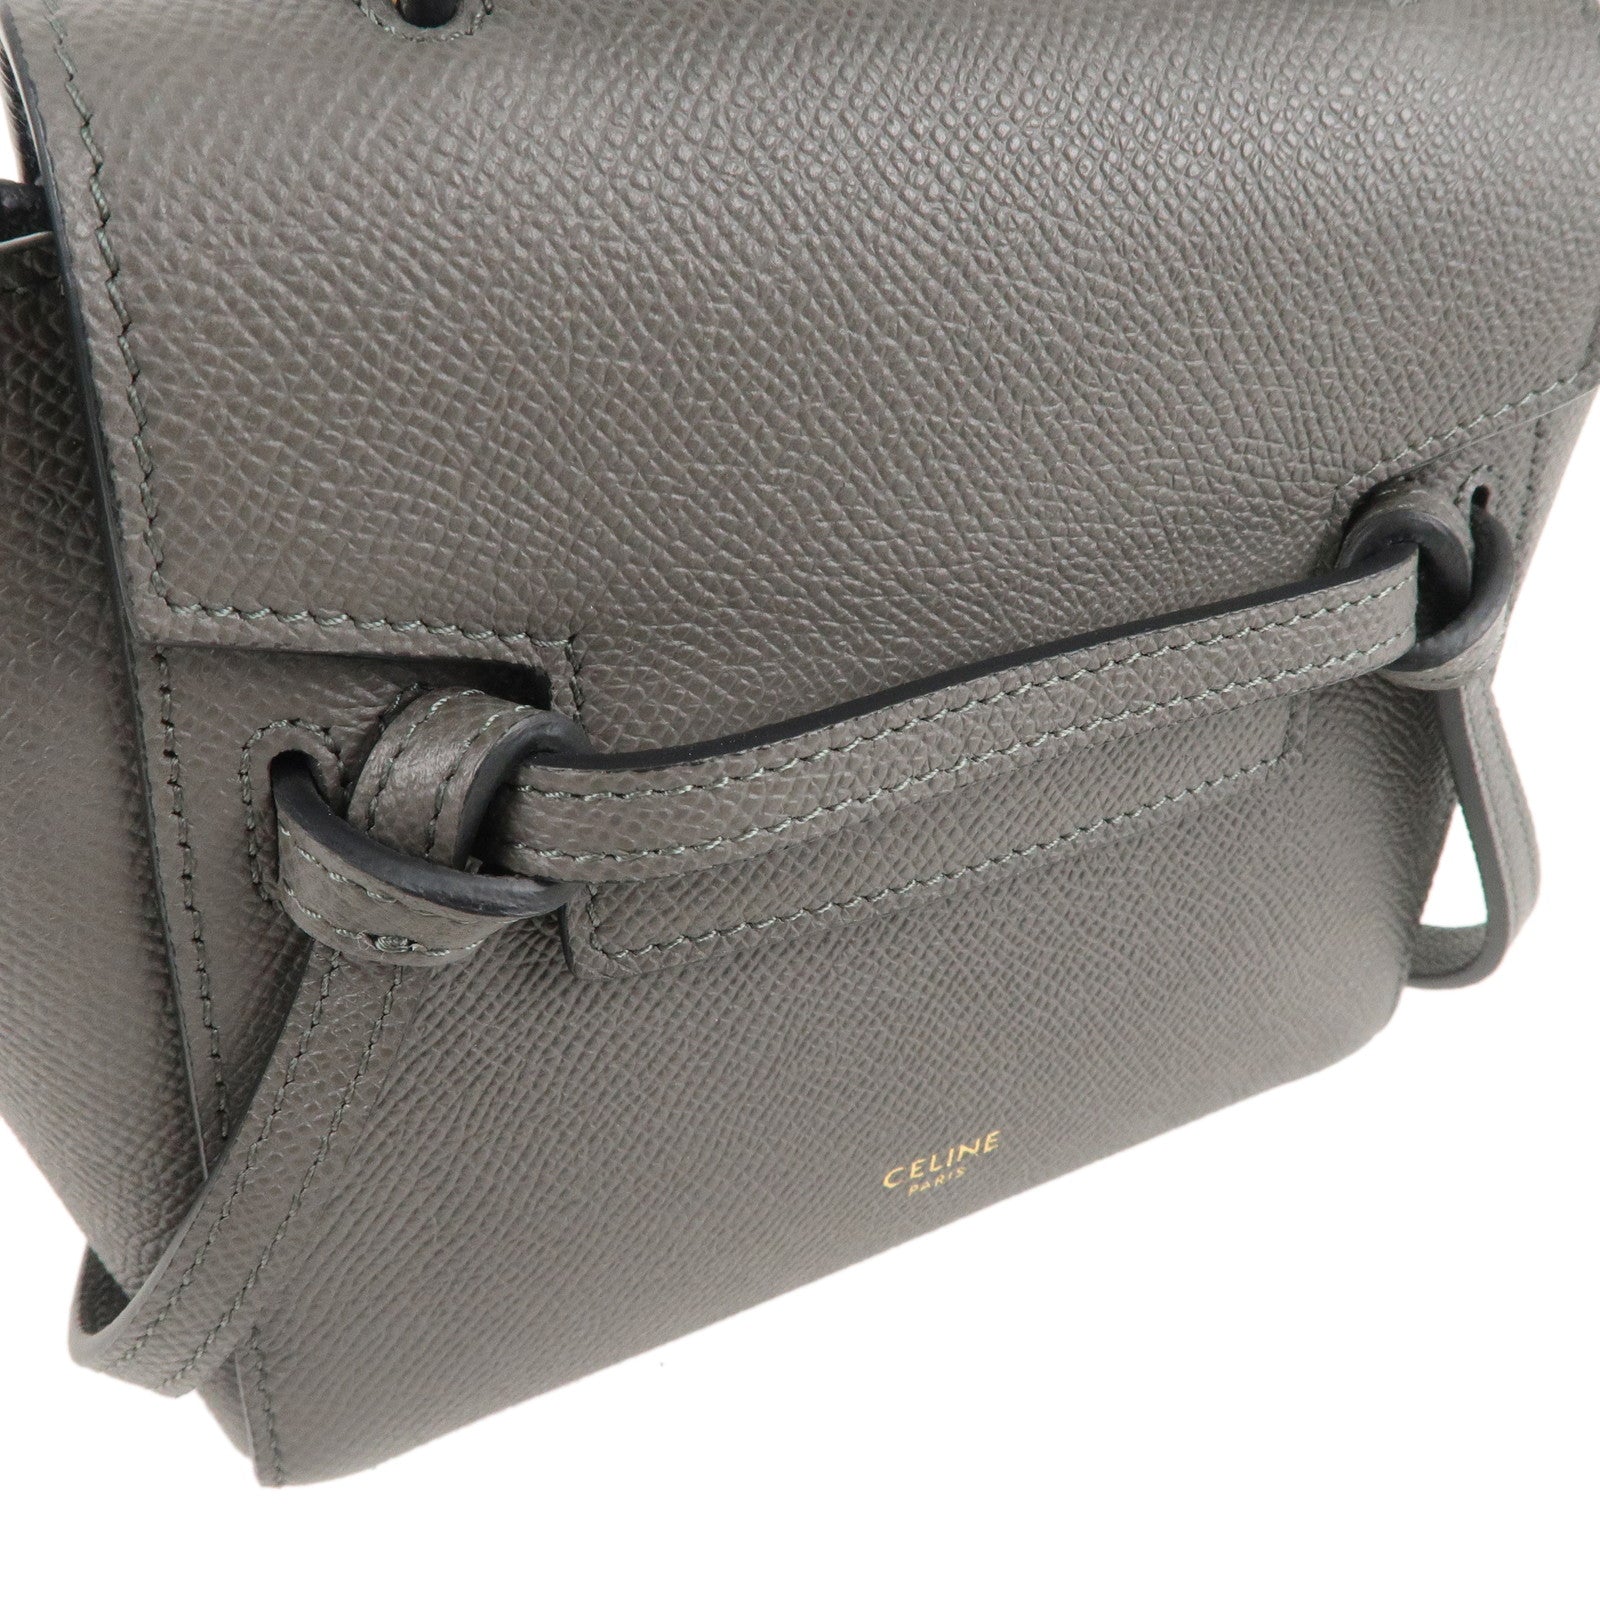 Celine Belt Pico Leather Cross Body Bag in Black